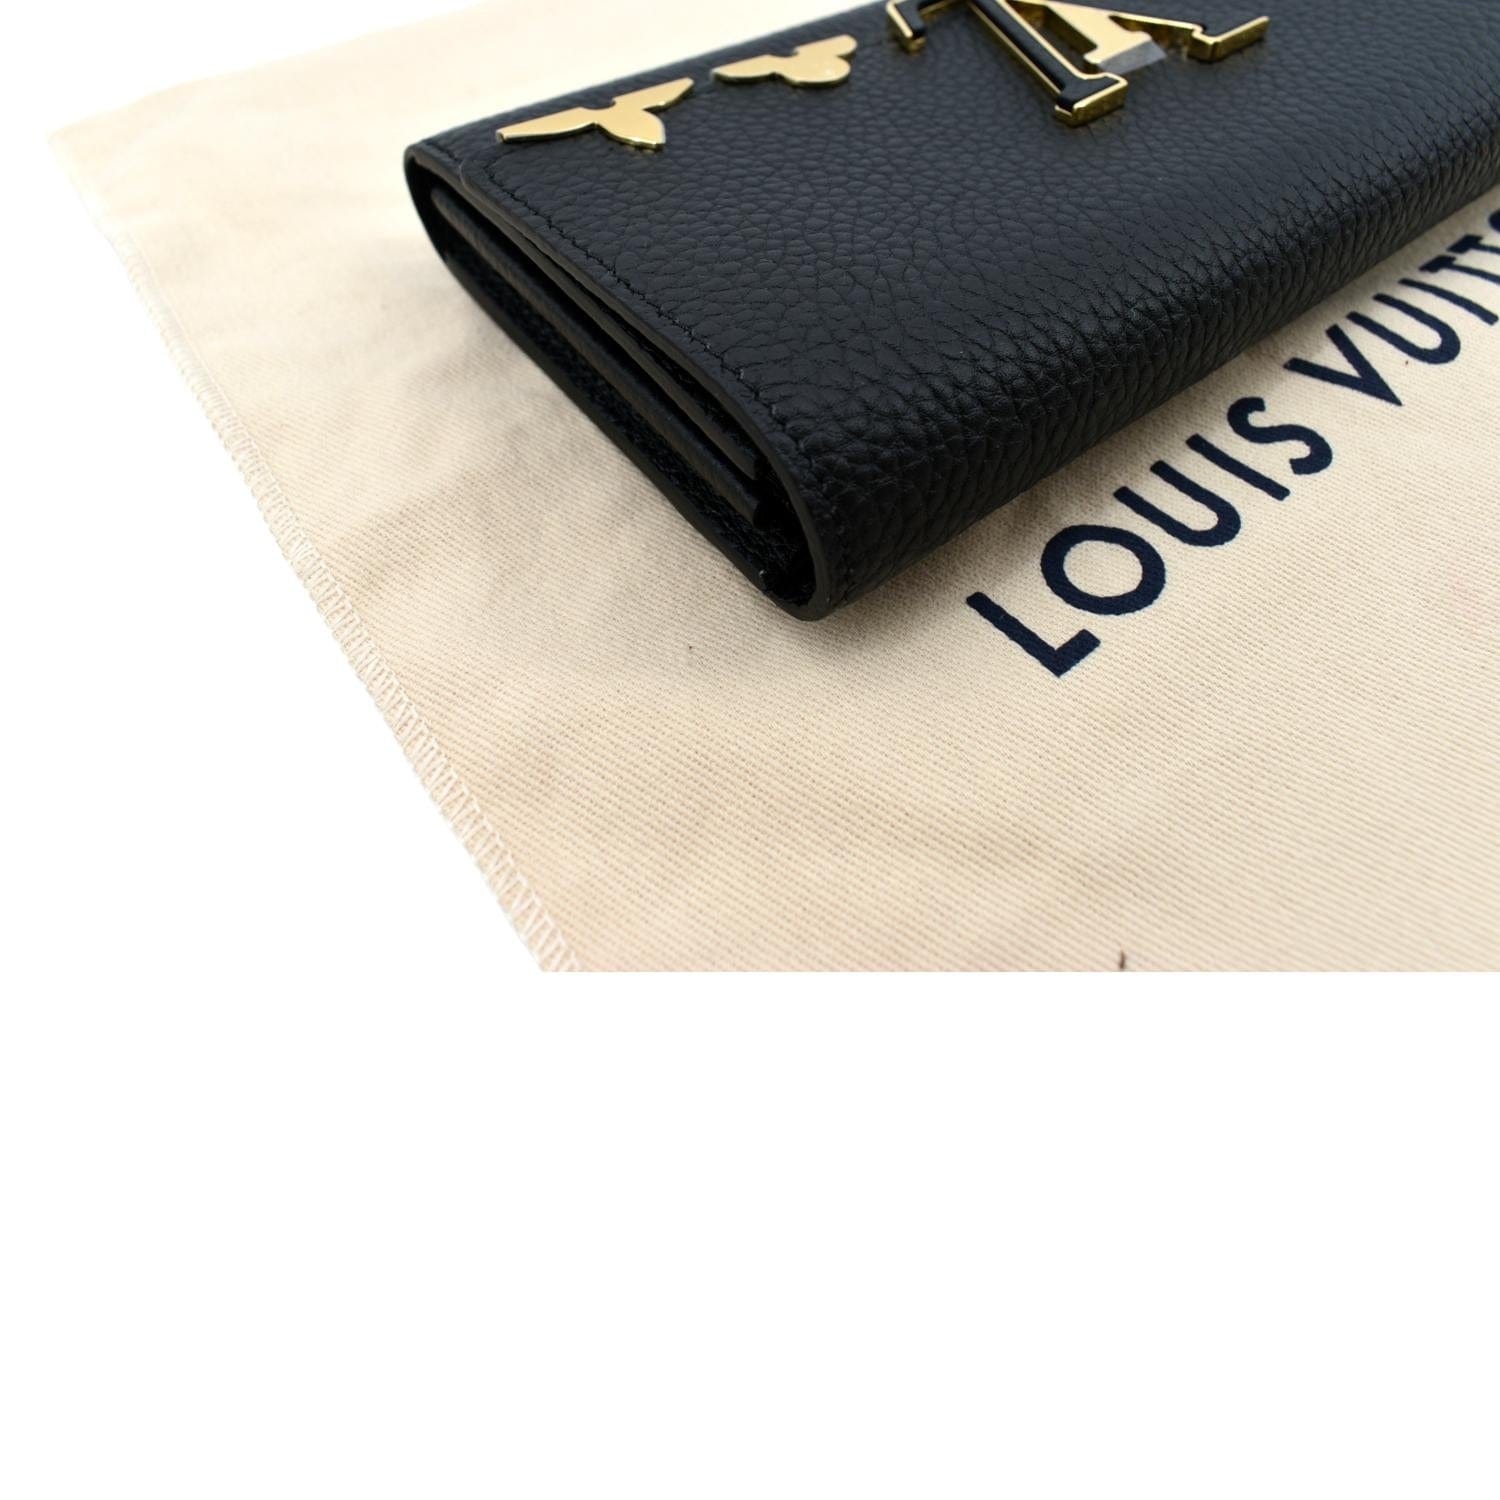 Louis Vuitton Women's Navy Taurillon Leather Capucines Wallet M63211